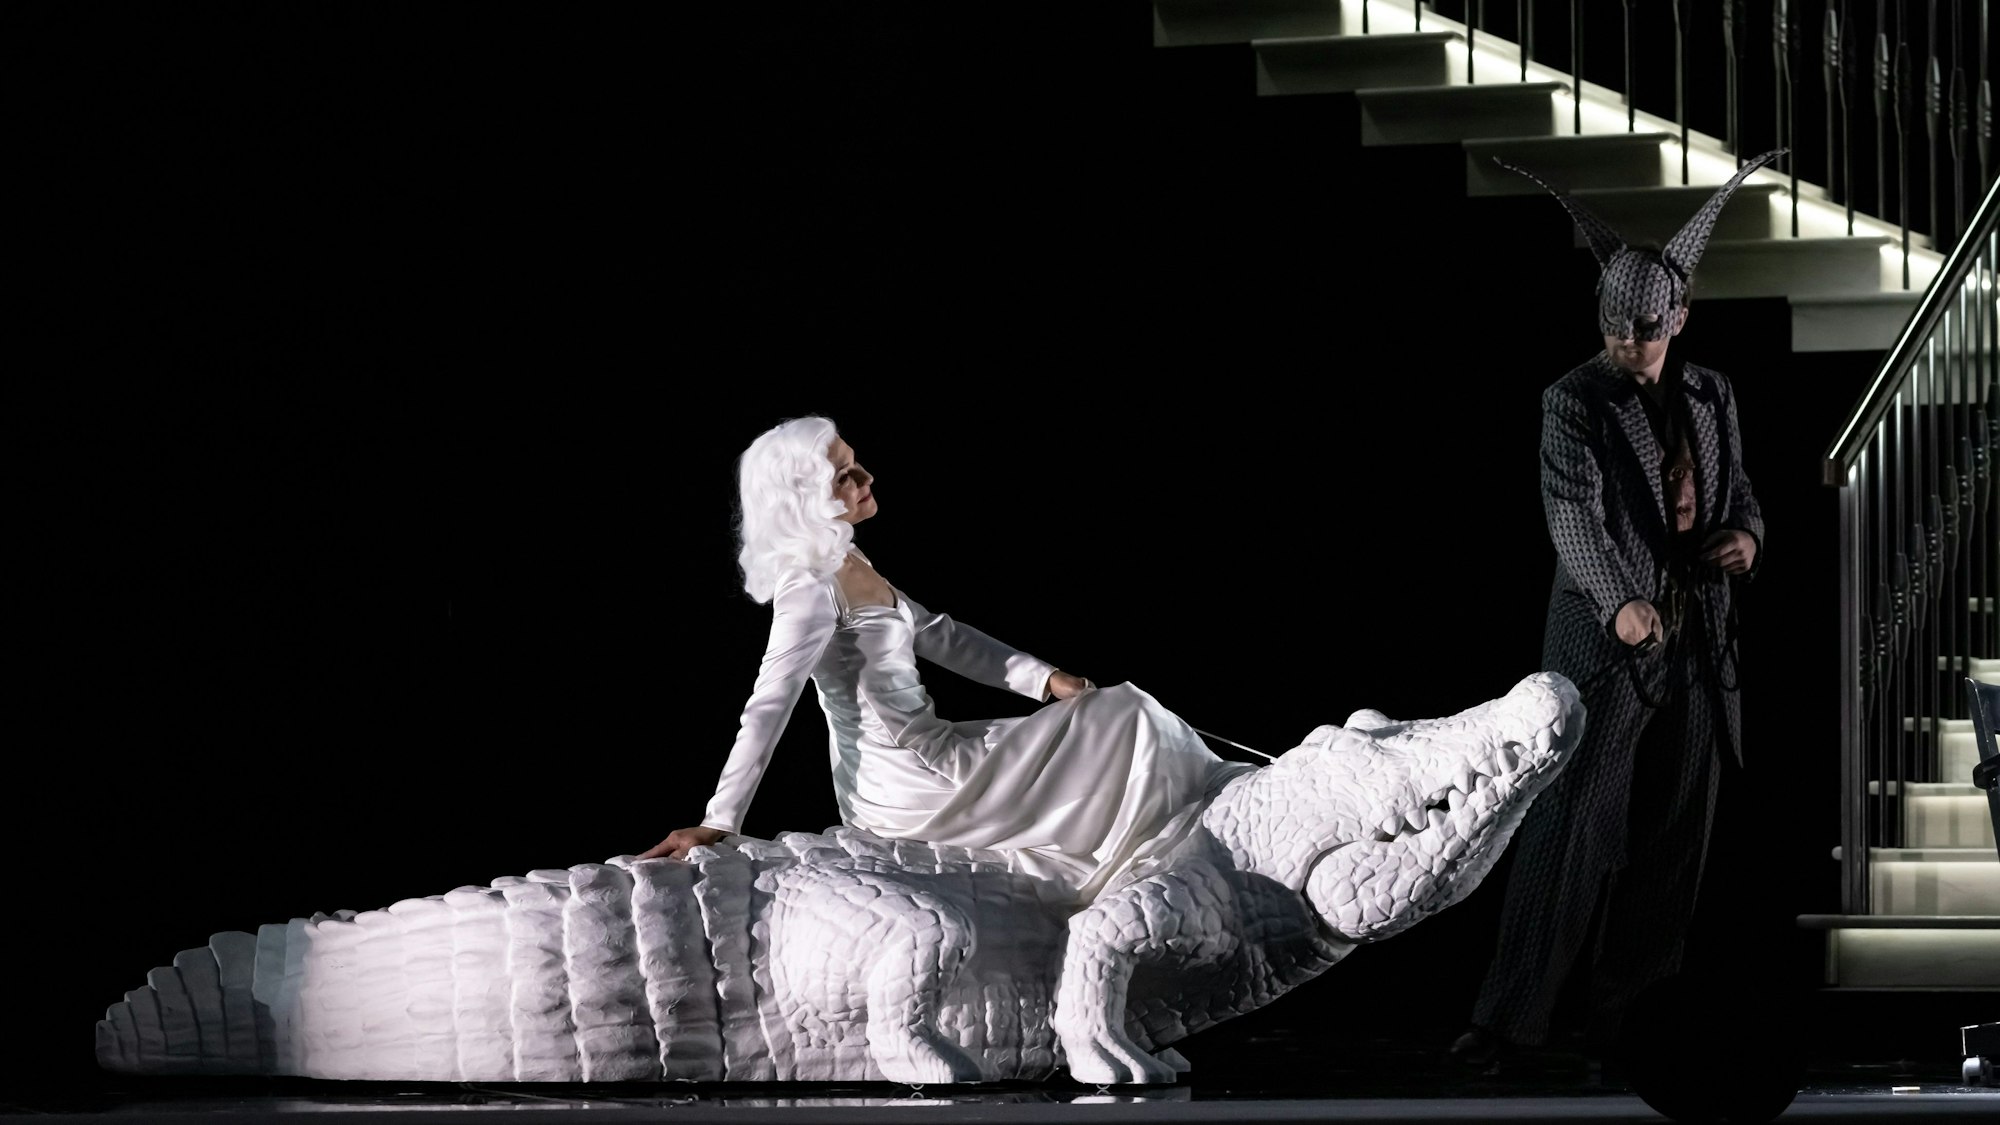 Eine ganz in Weiß gekleidete Frau reitet ein weißes Krokodil. Ein Mann guckt erstaunt.